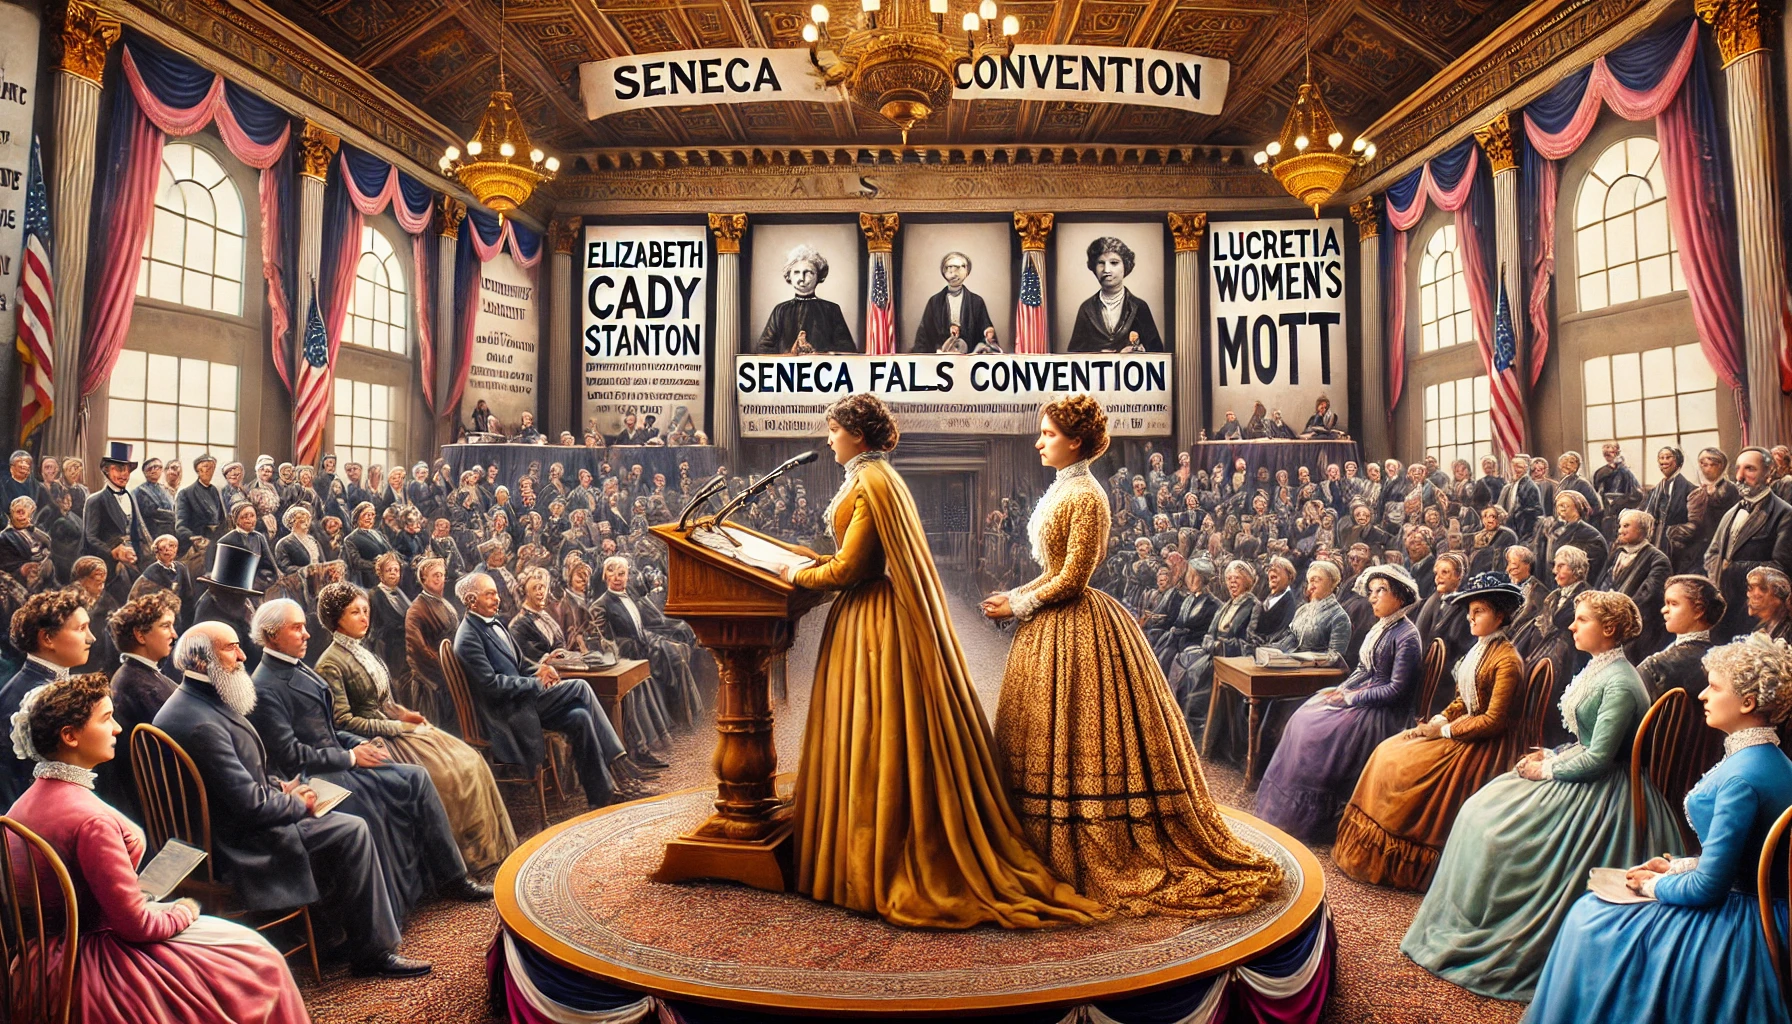 Seneca Falls Convention